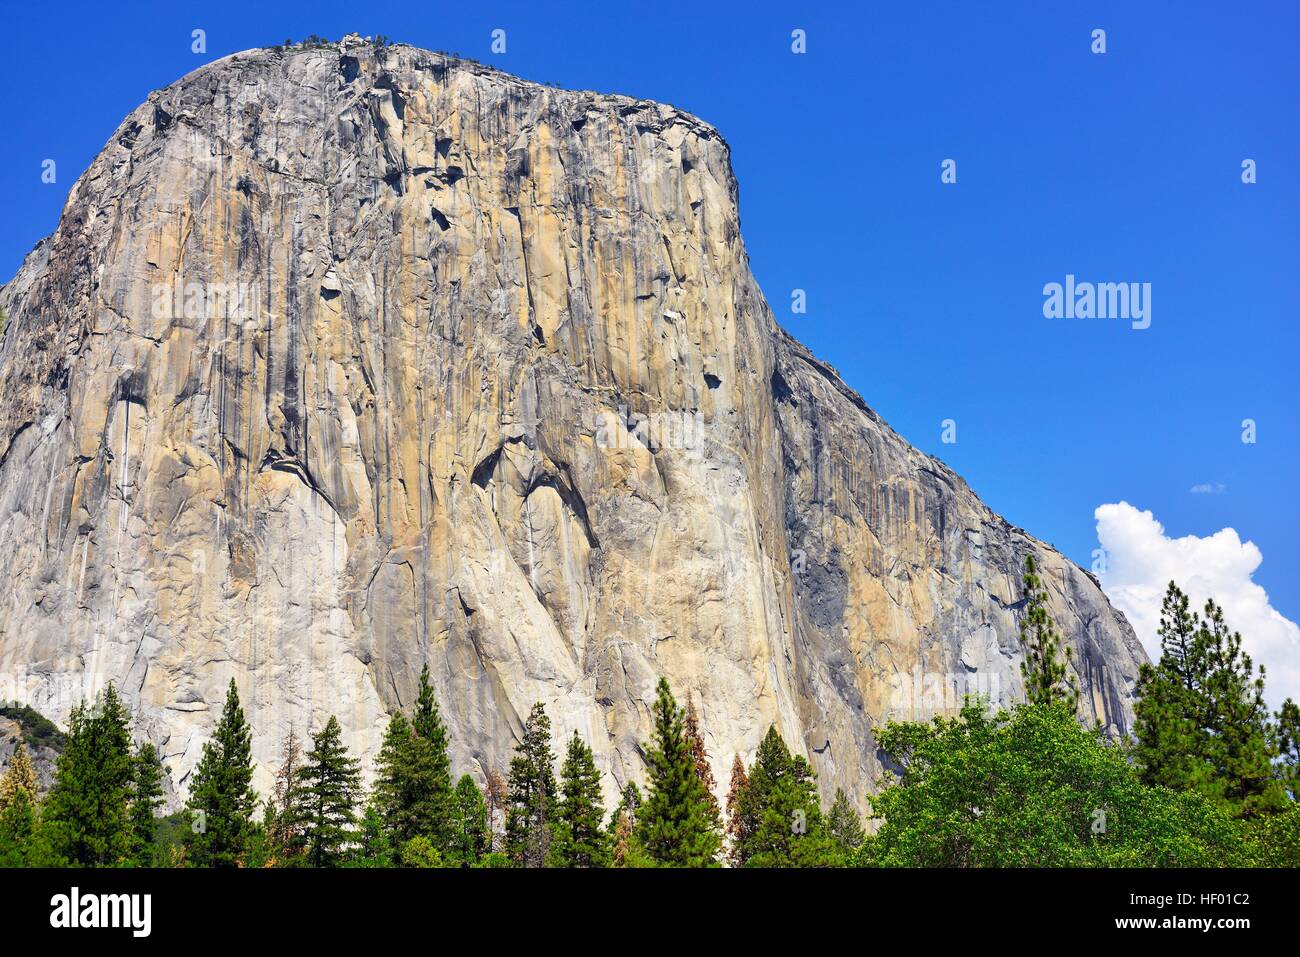 El Capitan, granito eroso montagna, Yosemite Valley, Yosemite National Park, California, Stati Uniti d'America Foto Stock